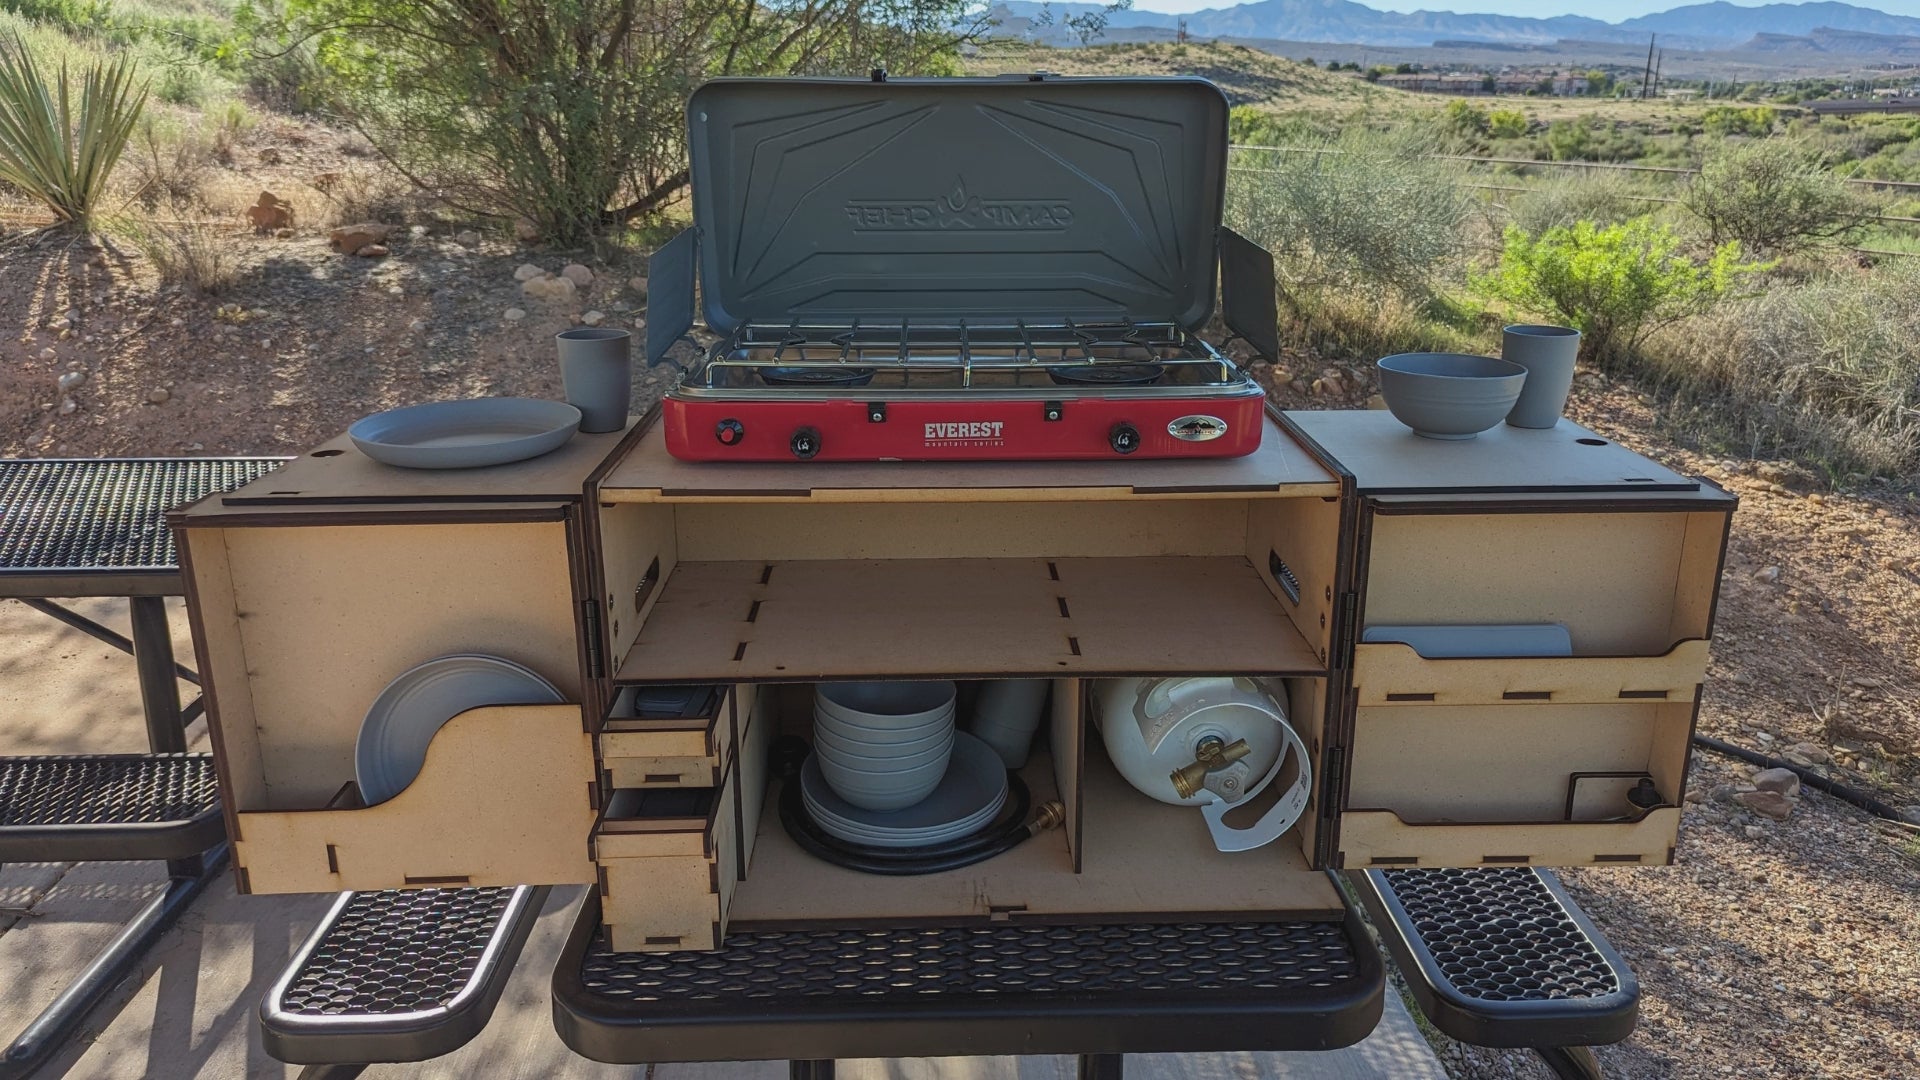 XL Chuck Box Camping Kitchen by Anser – Anser Gear